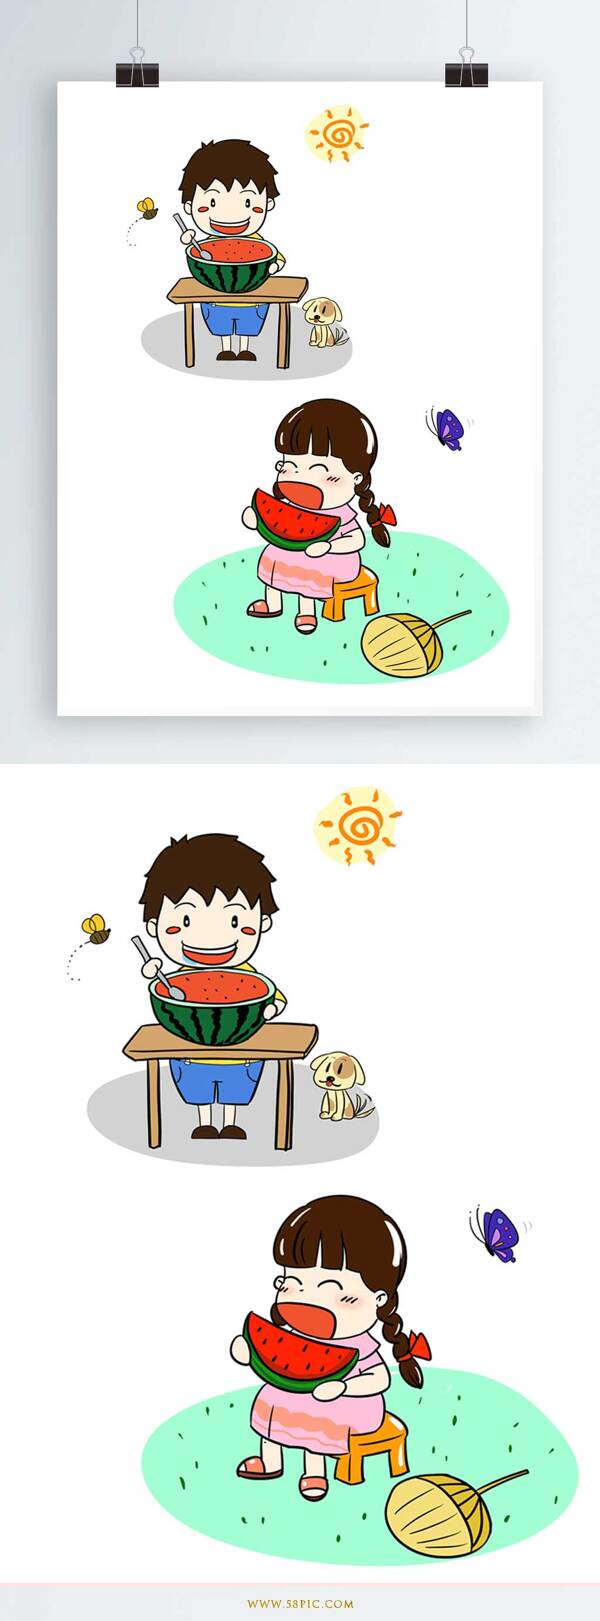 吃西瓜的小孩插画夏天元素